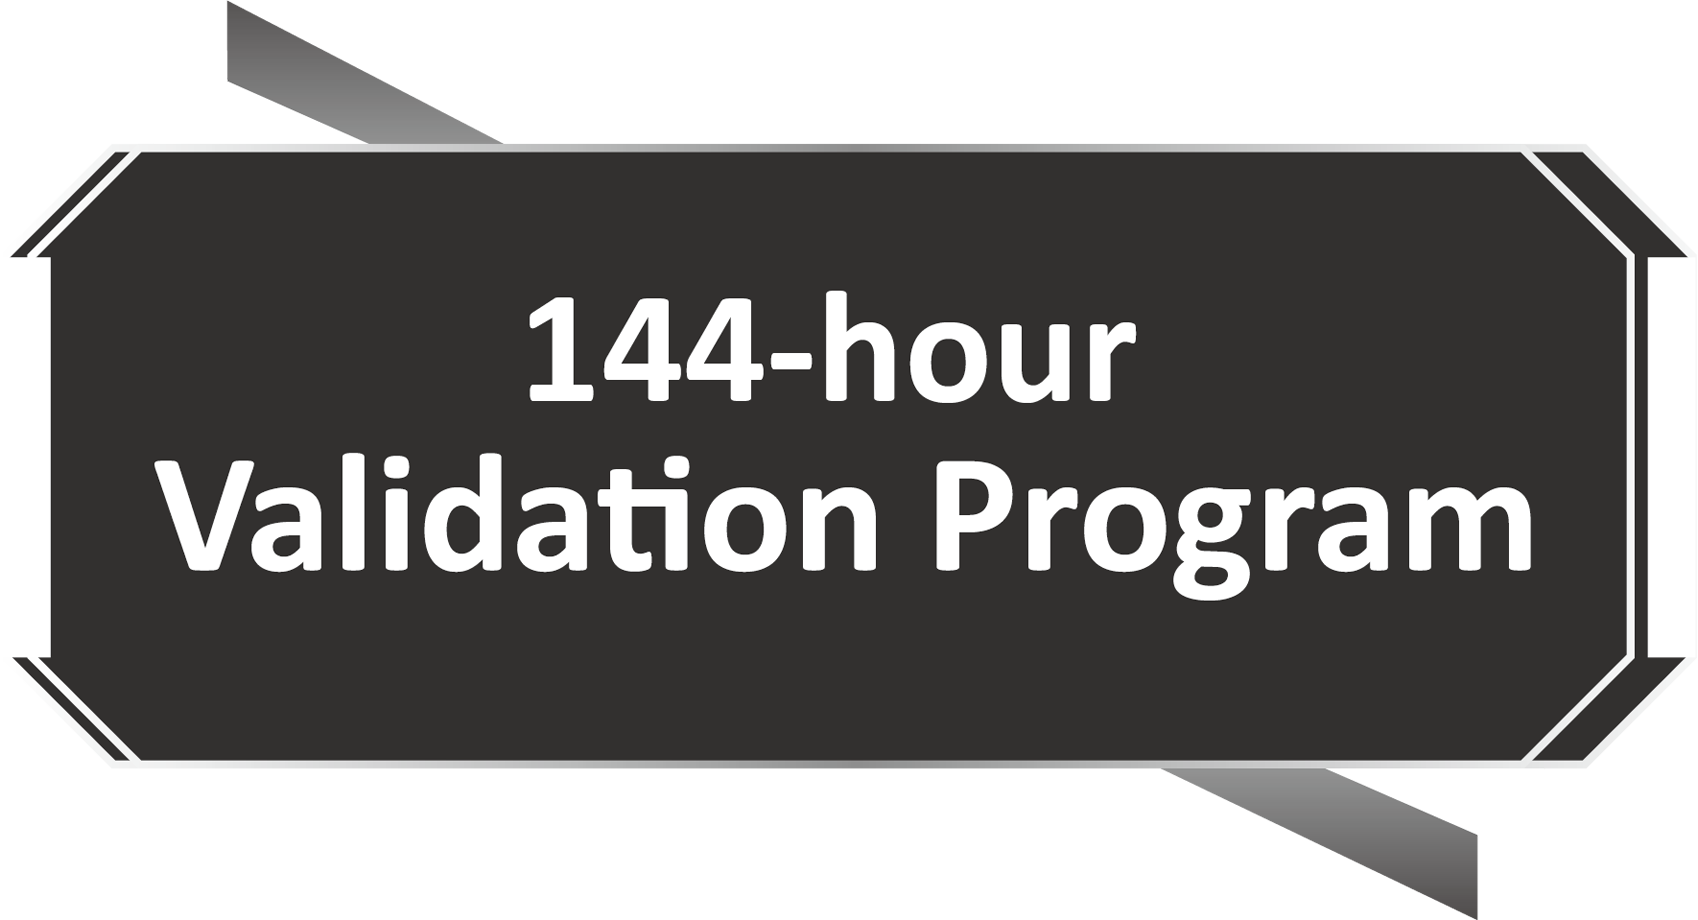 Selo do Programa de Validação de 144 Horas